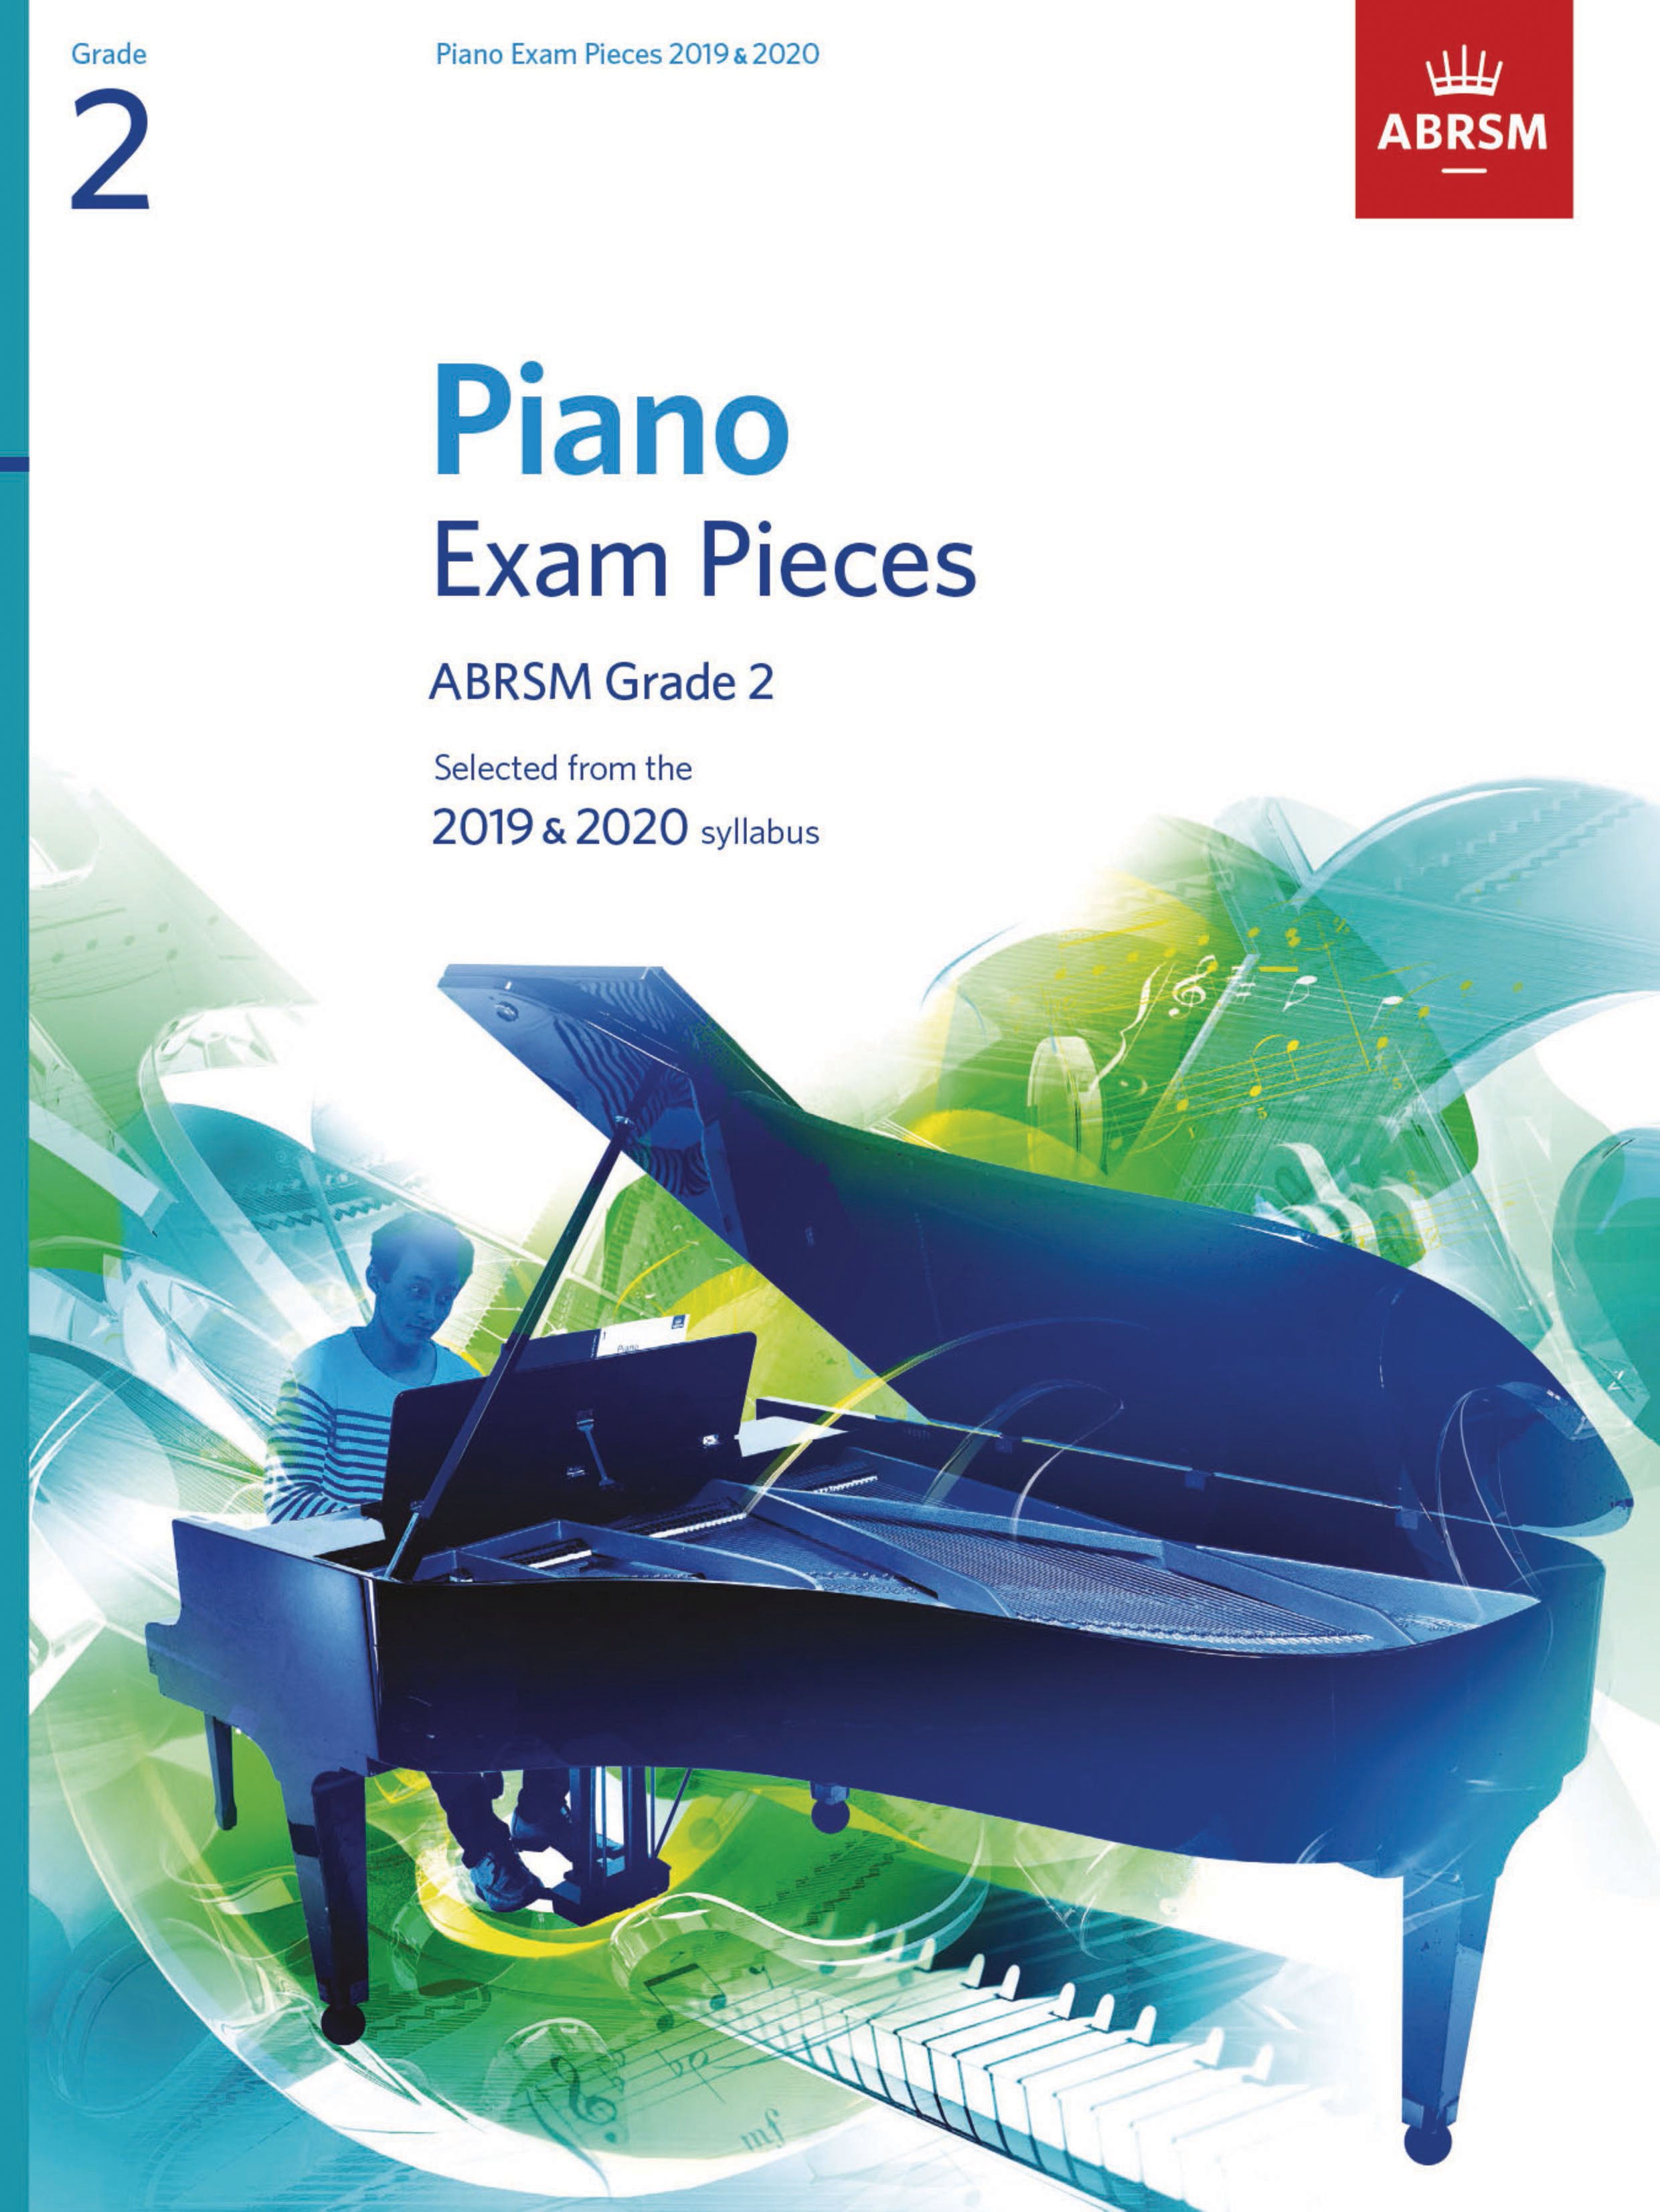 ABRSM-Piano-Exam-Pieces-2019-2020-Grade-2